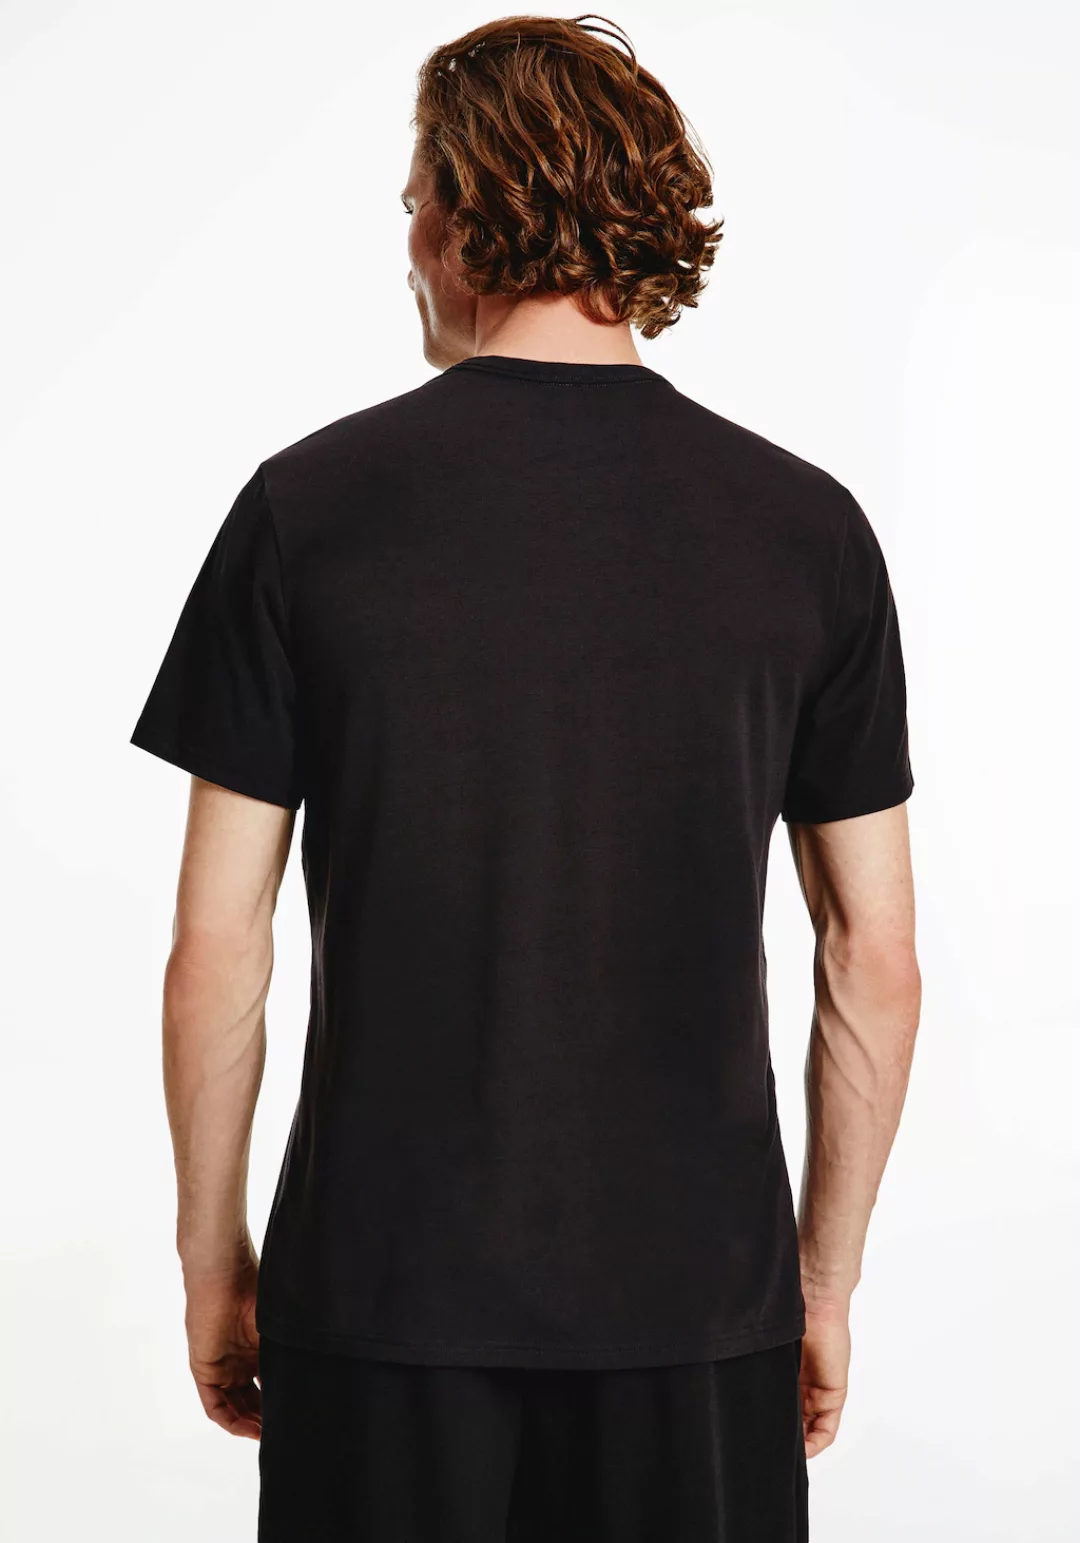 Calvin Klein T-Shirt NM2170E/UB1 günstig online kaufen